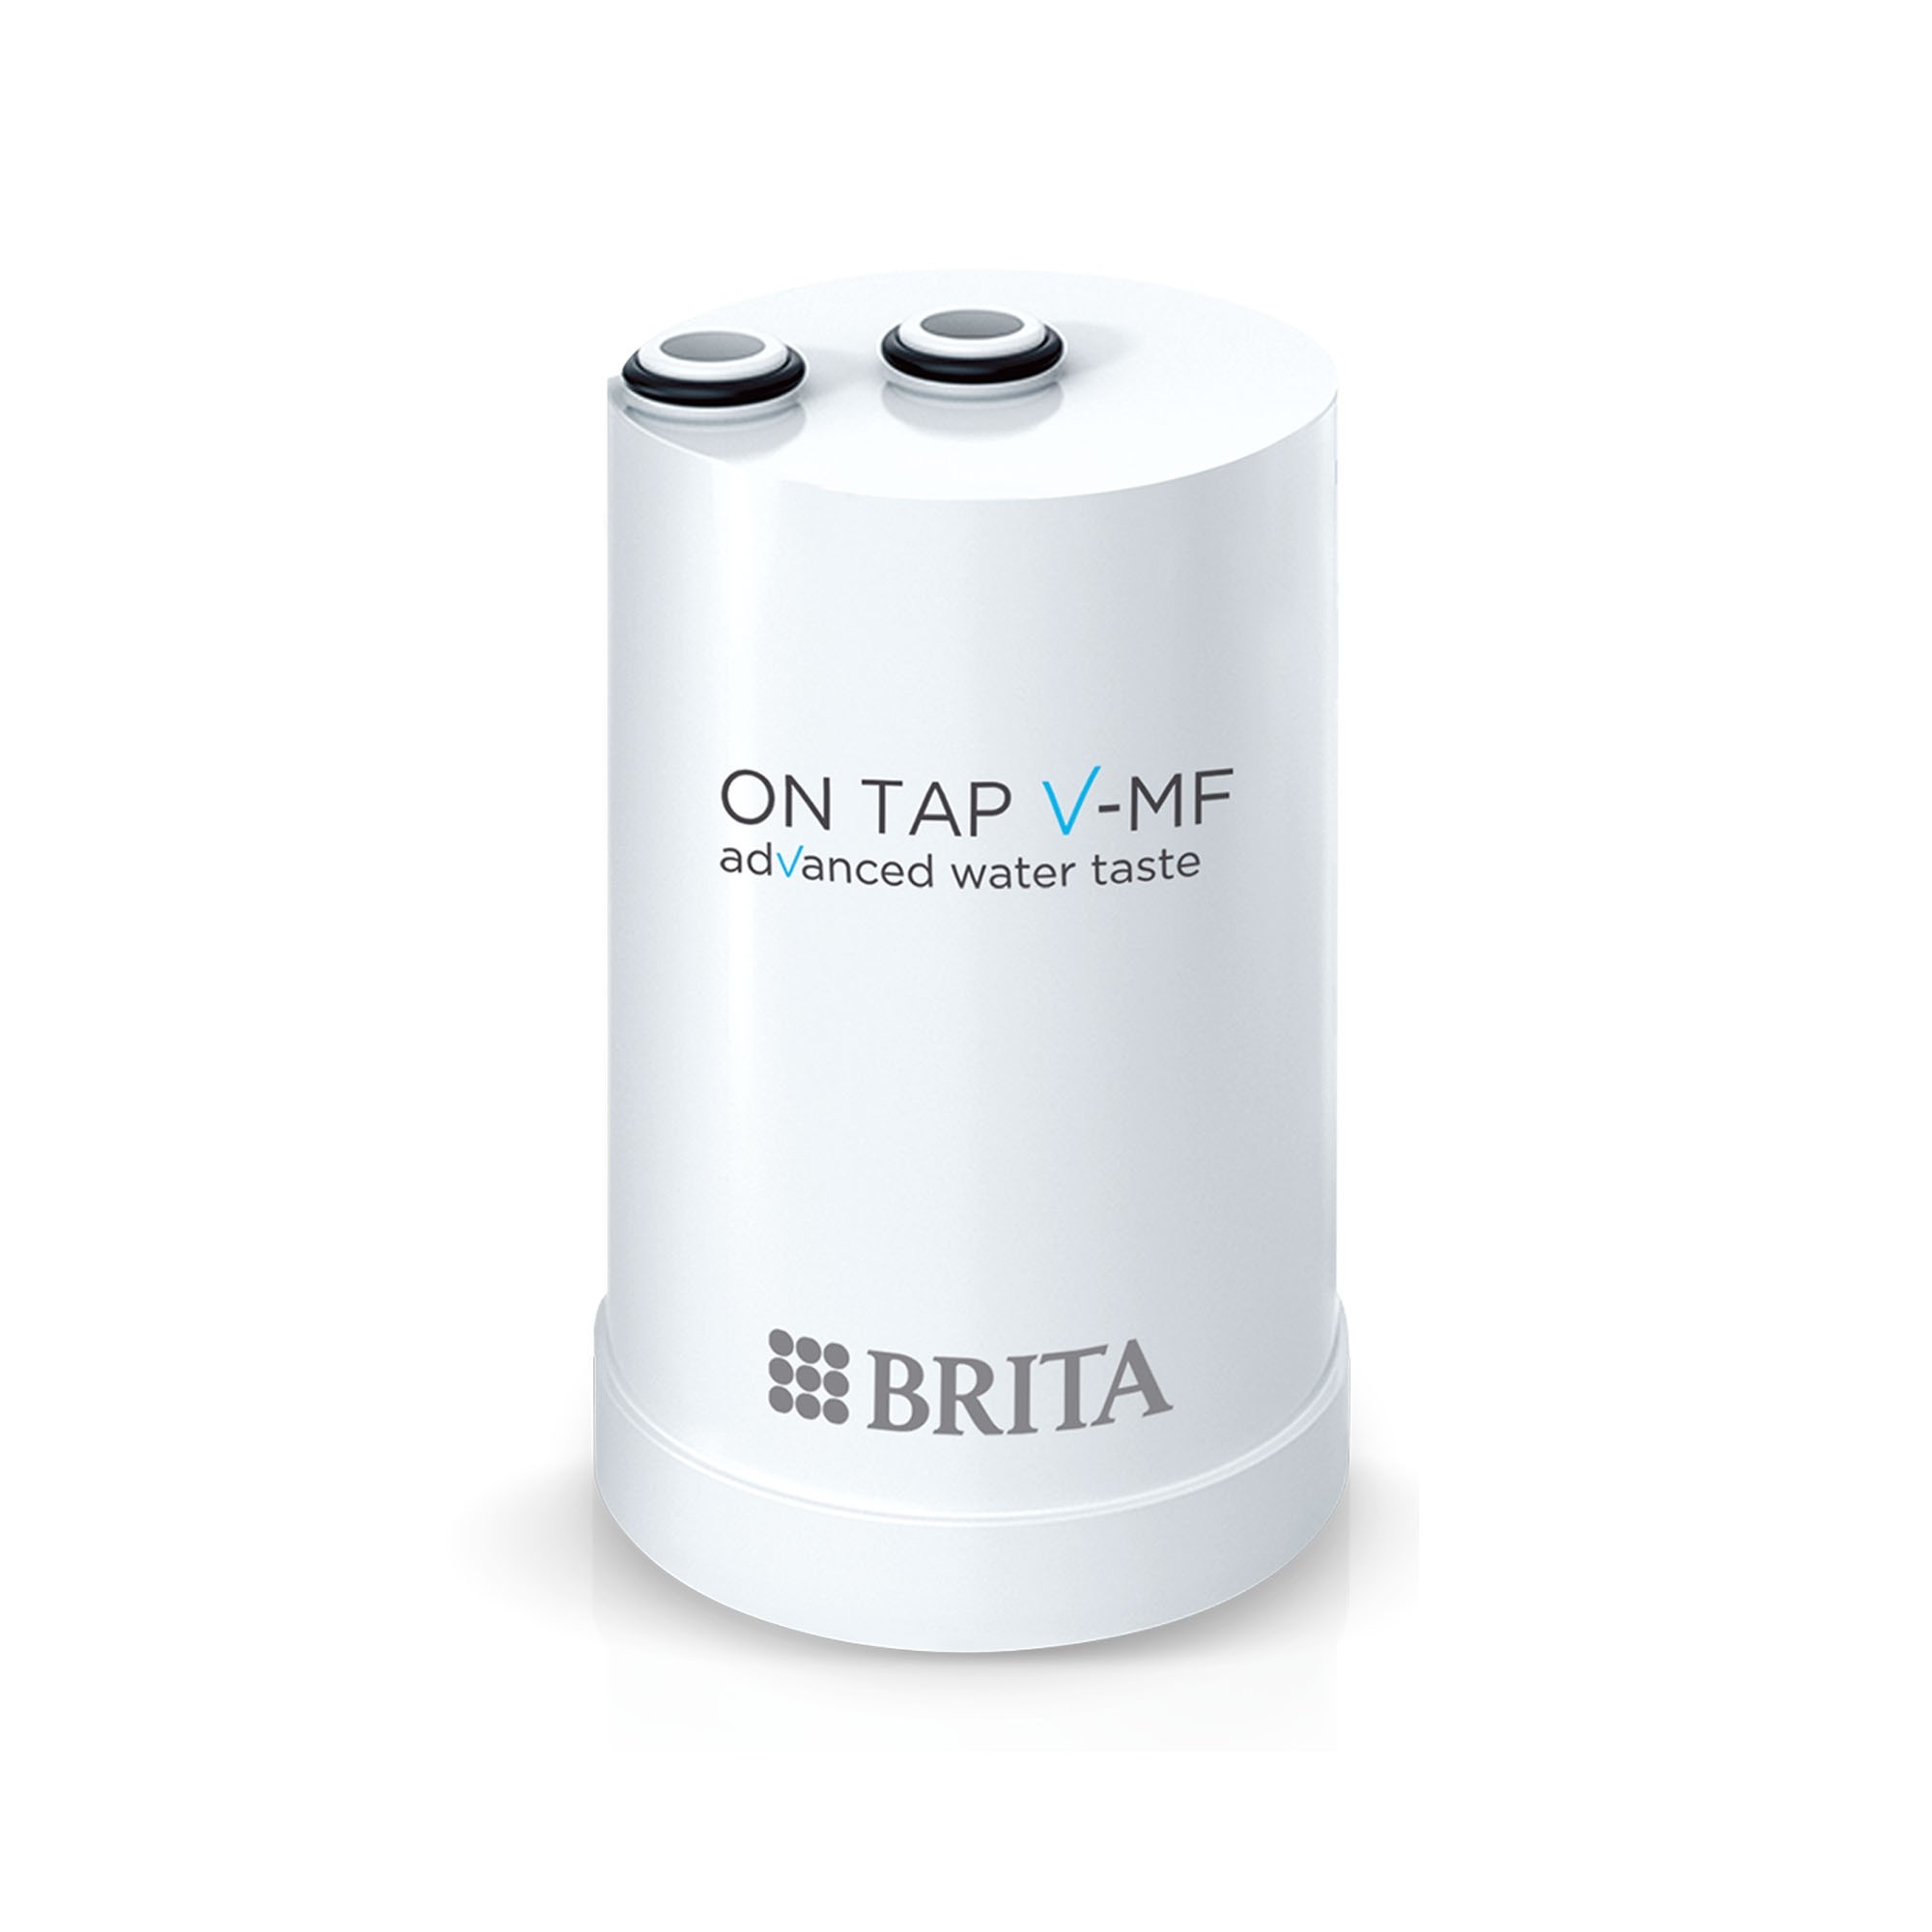 Système de filtre Brita On Tap Pro V-MF pour le robinet + 1 filtre GRATUIT  (TOTAL 2 FILTRES)